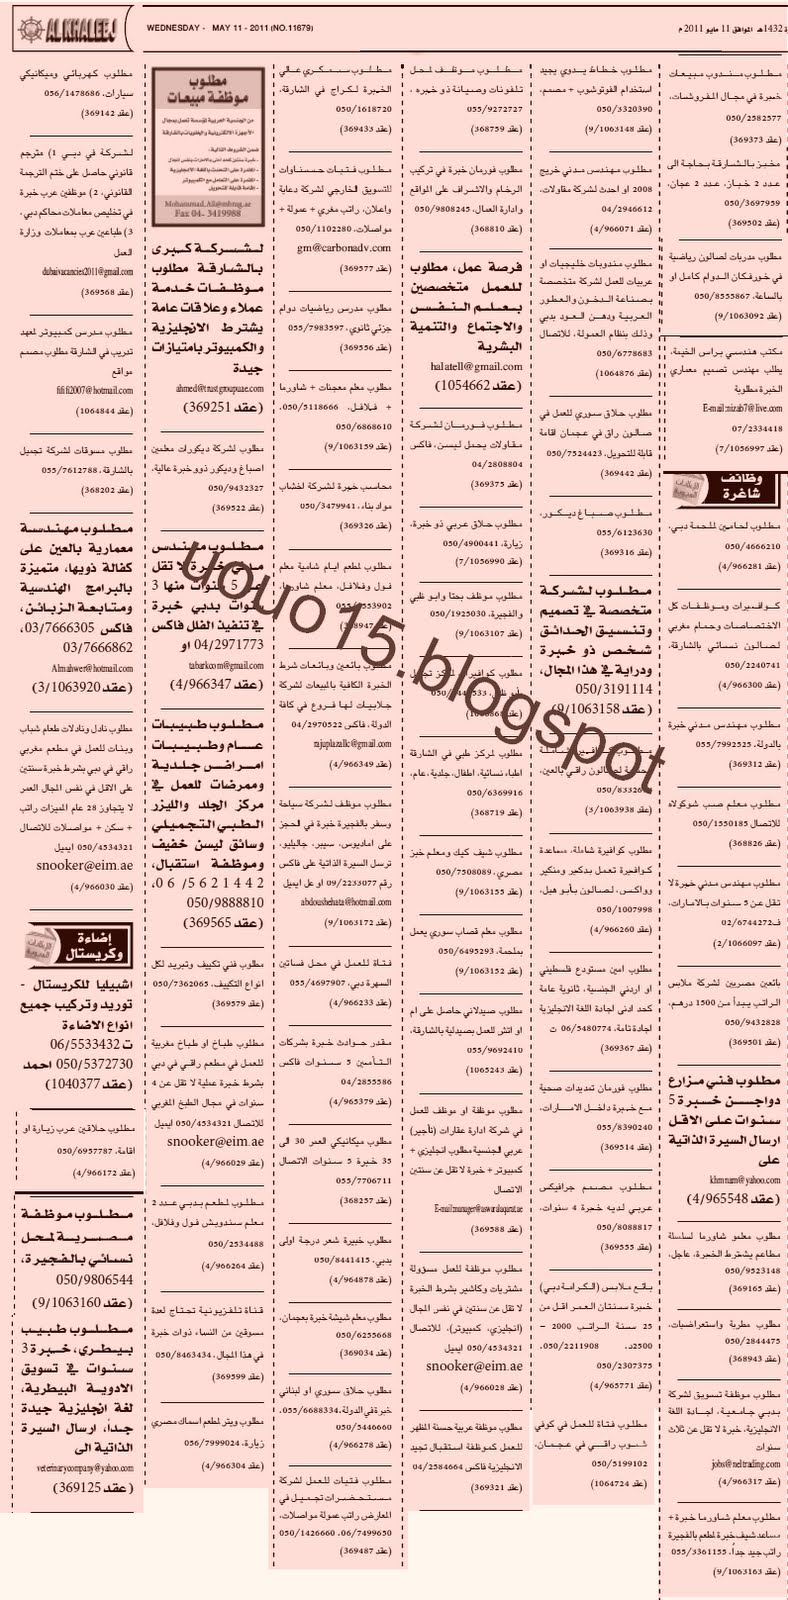 وظائف الامارات - وظائف جريدة الخليج مايو 2011 1